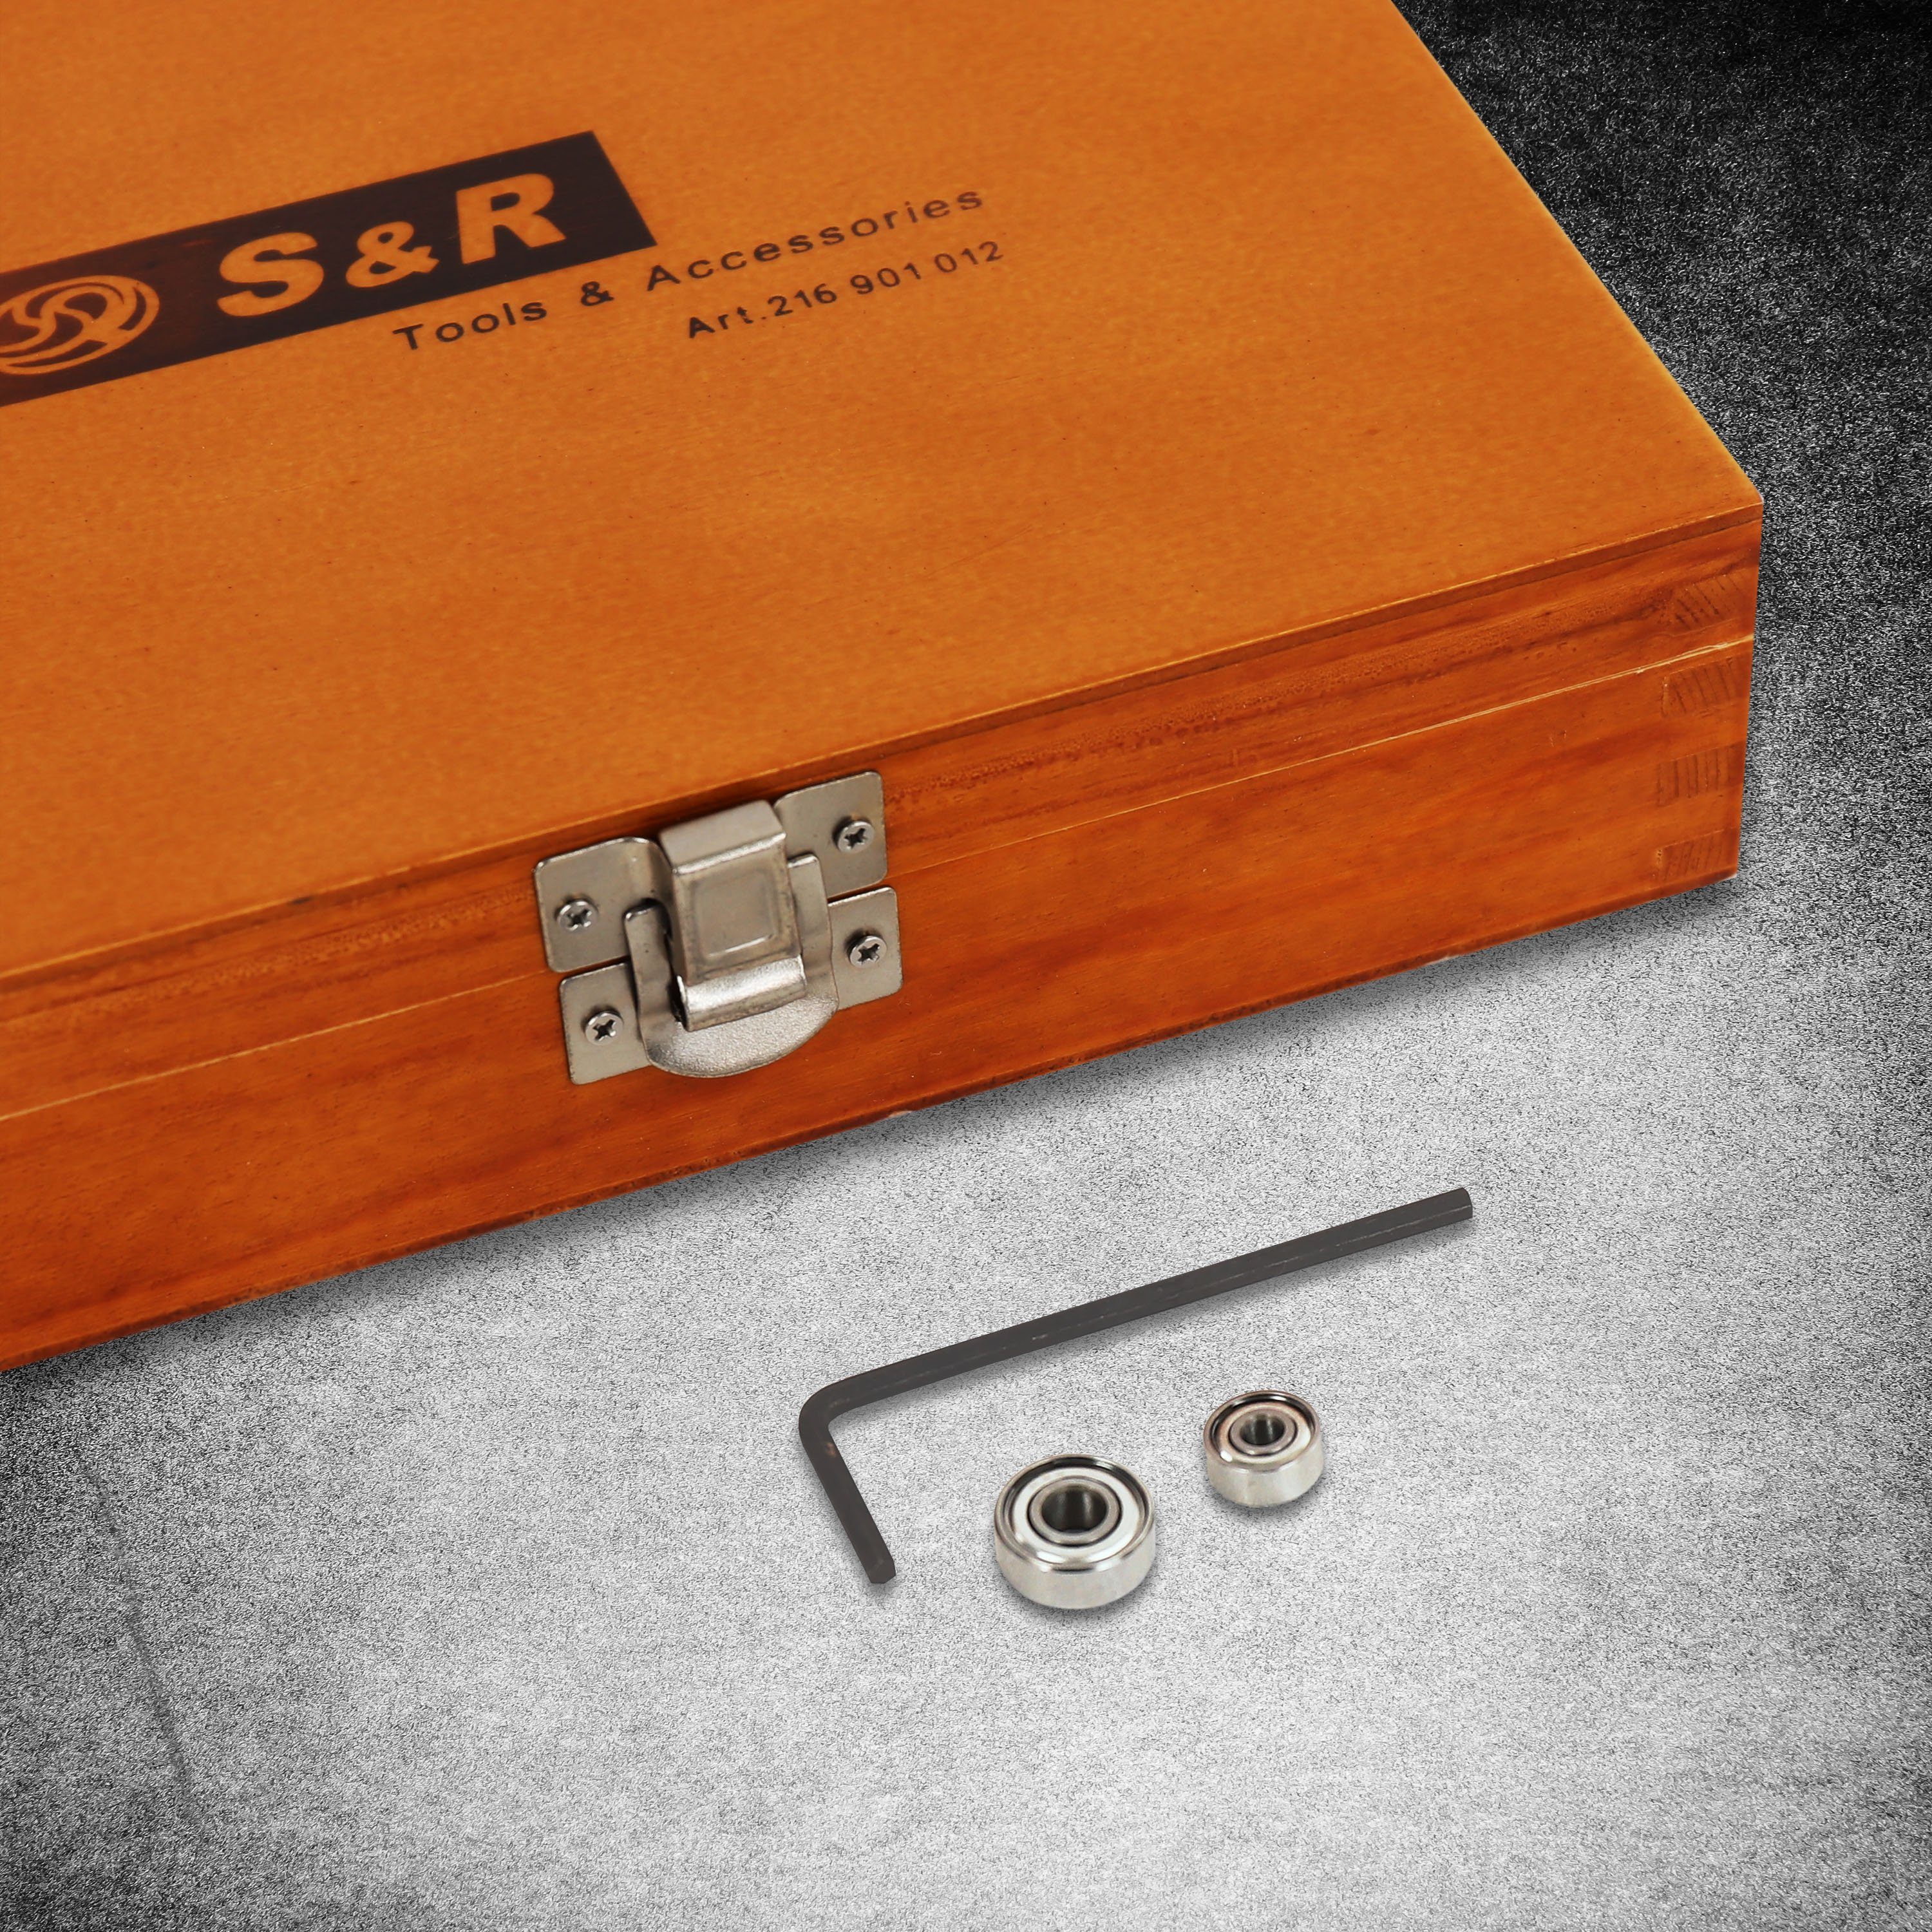 S&R Fräsbohrer 8mm, Set Holzkoffer, verschiedene für anwendbar Holzmaterialien Universell Industrie-Qualität, Hochleistung, 12-tlg, Schaft